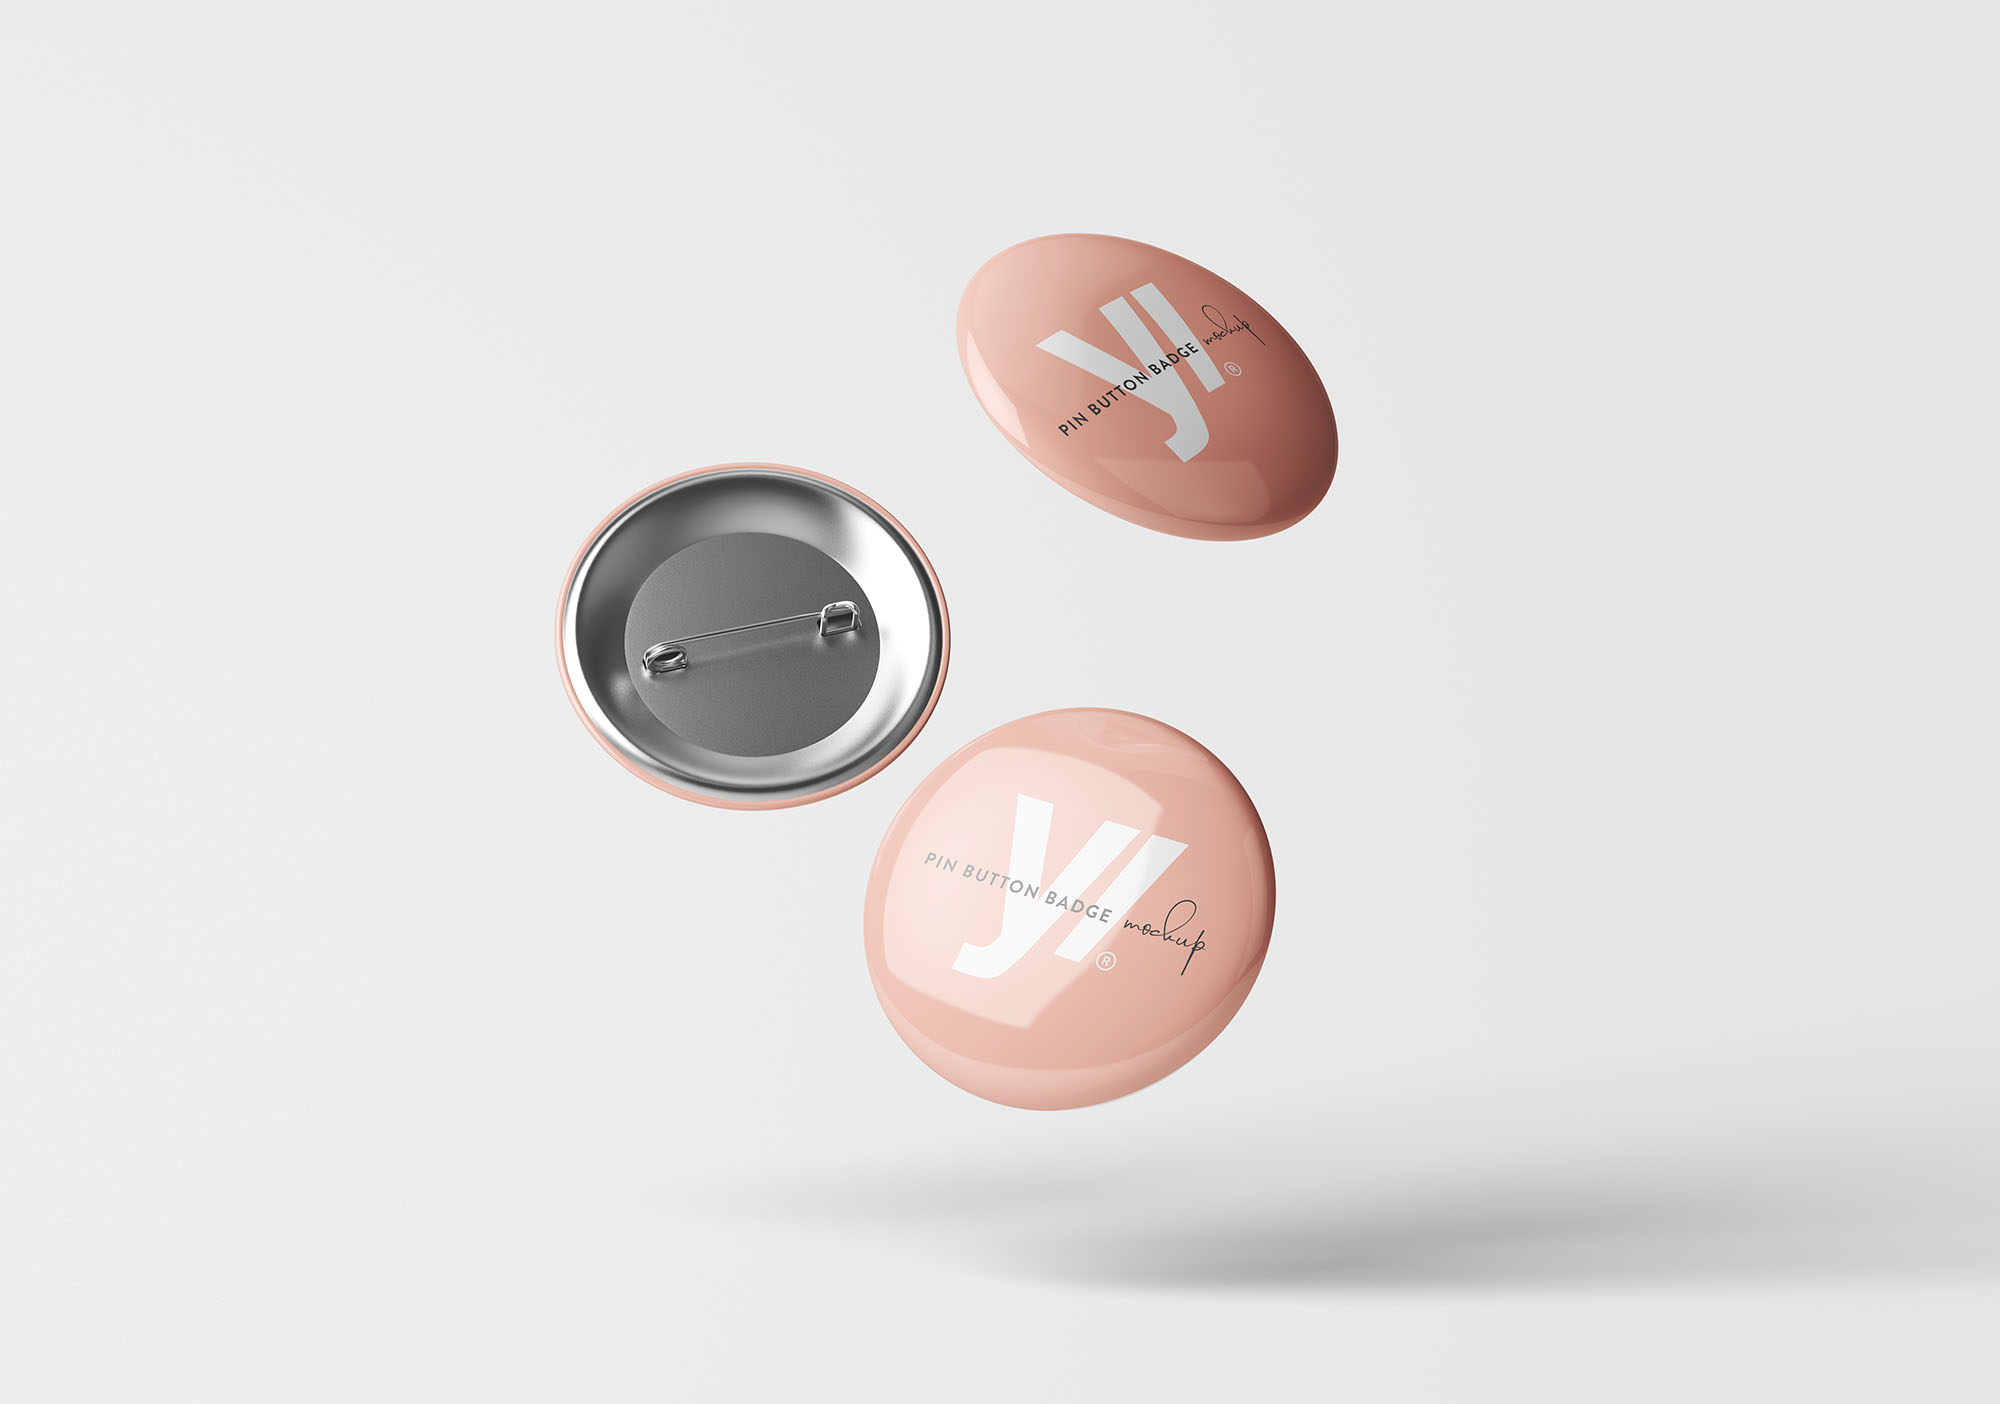 别针徽章胸章定做设计样机模板 Pin Button Badge Mockup插图(6)